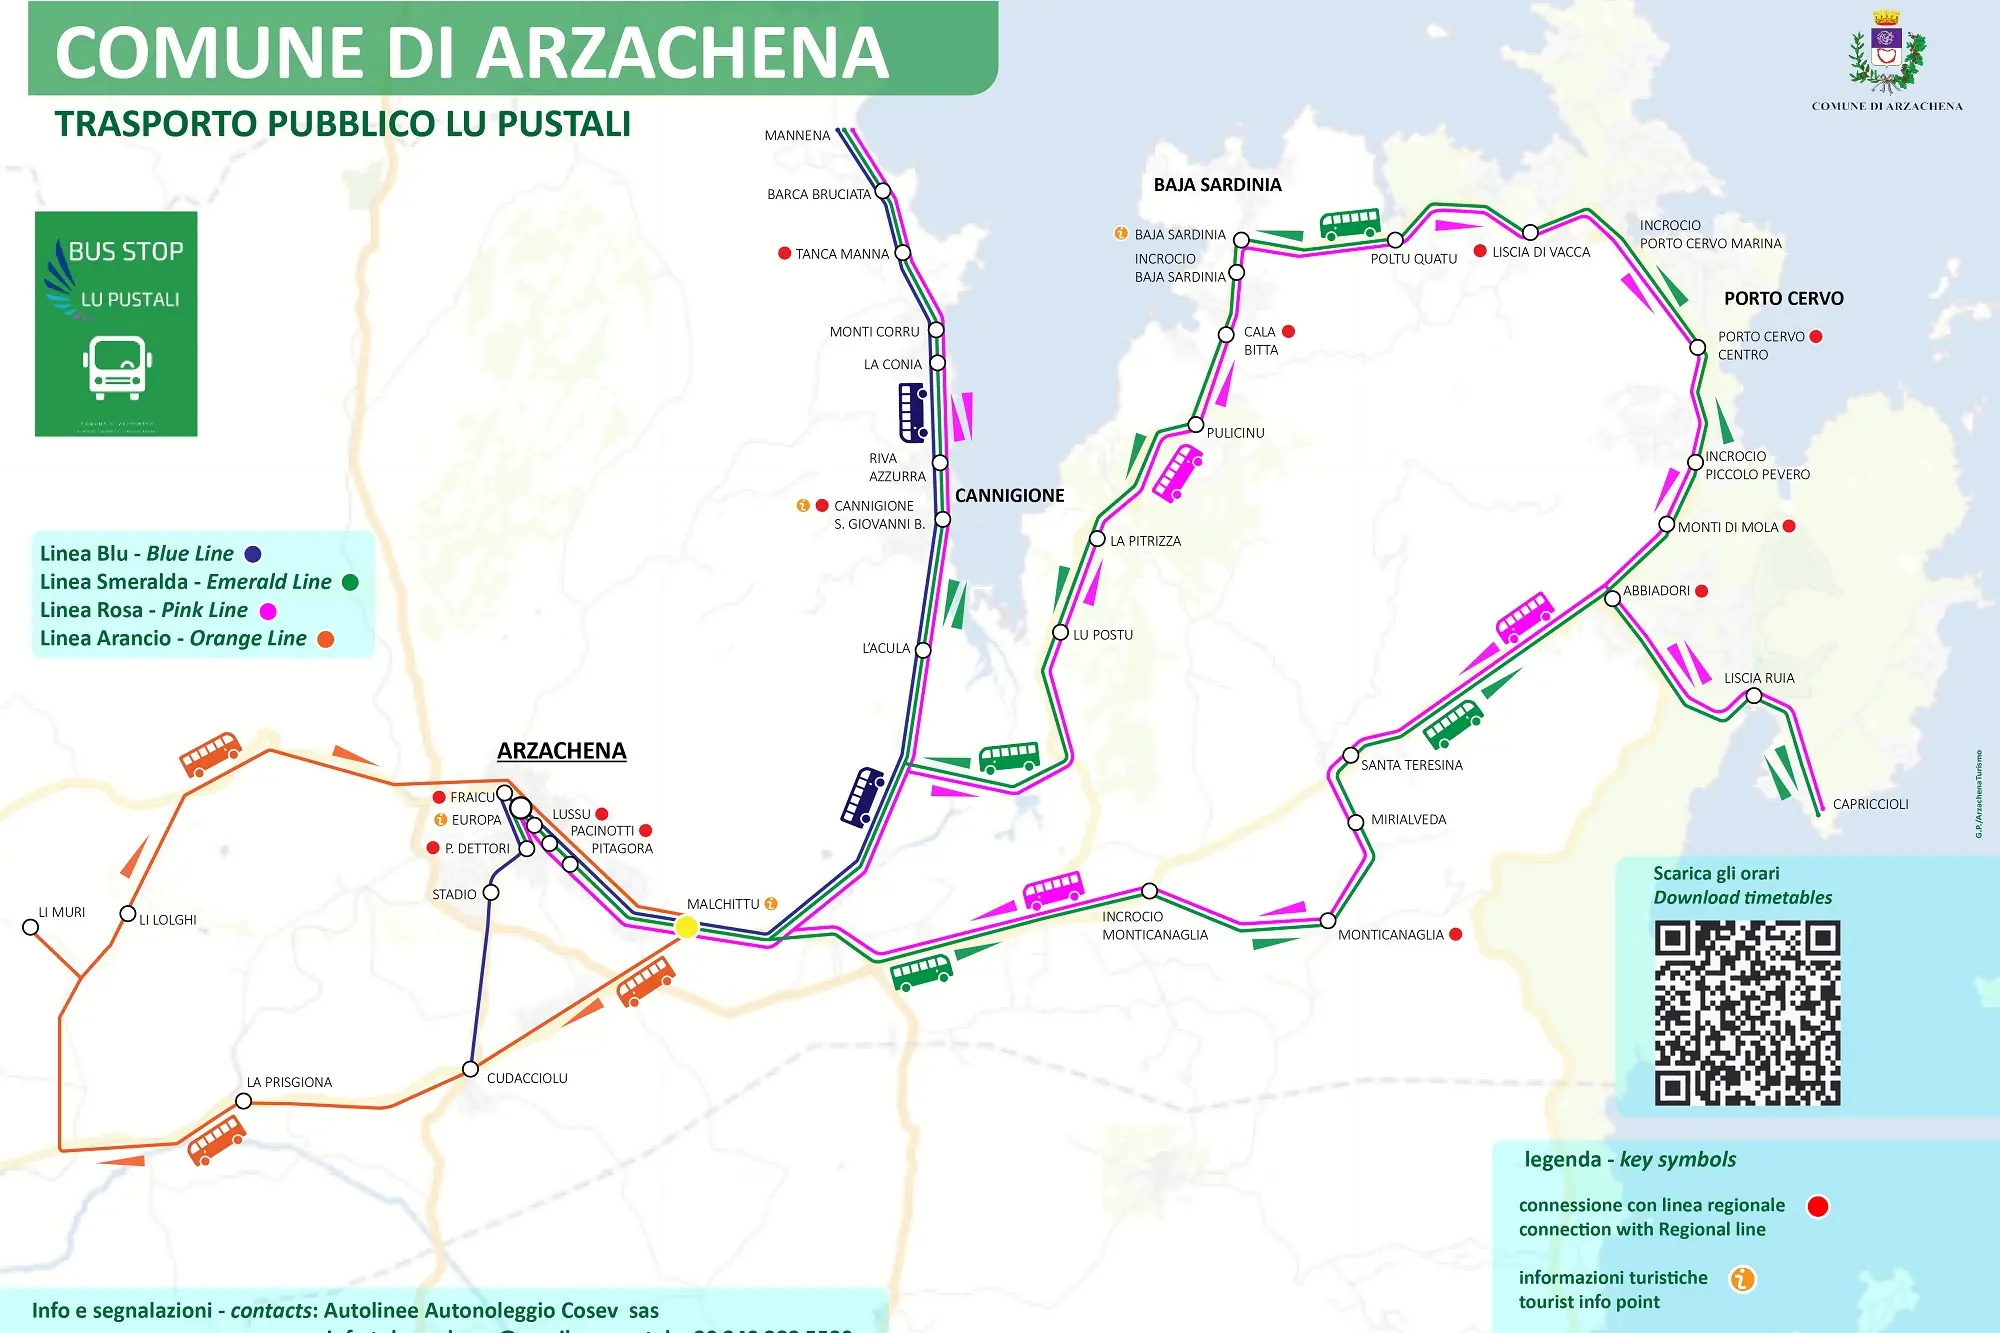 Arzachena, la mappa del trasporto pubblico (foto Ronchi)